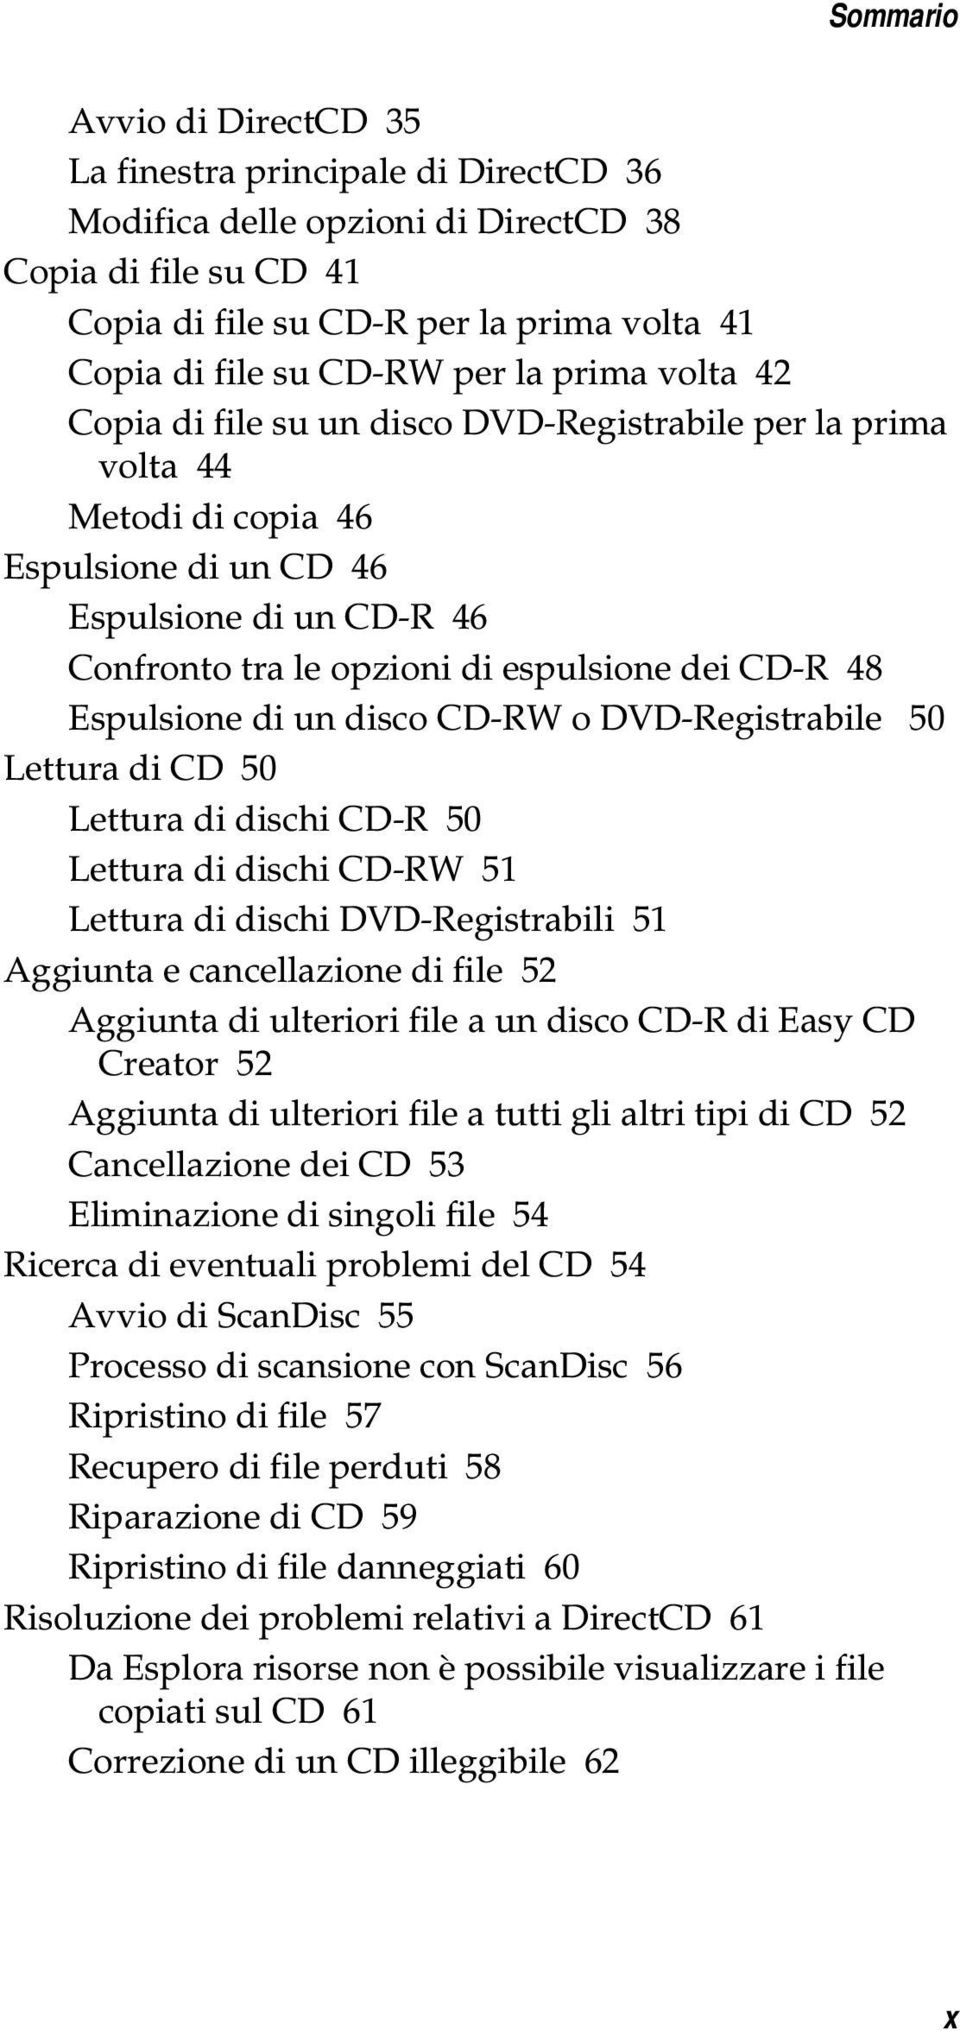 48 Espulsione di un disco CD-RW o DVD-Registrabile 50 Lettura di CD 50 Lettura di dischi CD-R 50 Lettura di dischi CD-RW 51 Lettura di dischi DVD-Registrabili 51 Aggiunta e cancellazione di file 52